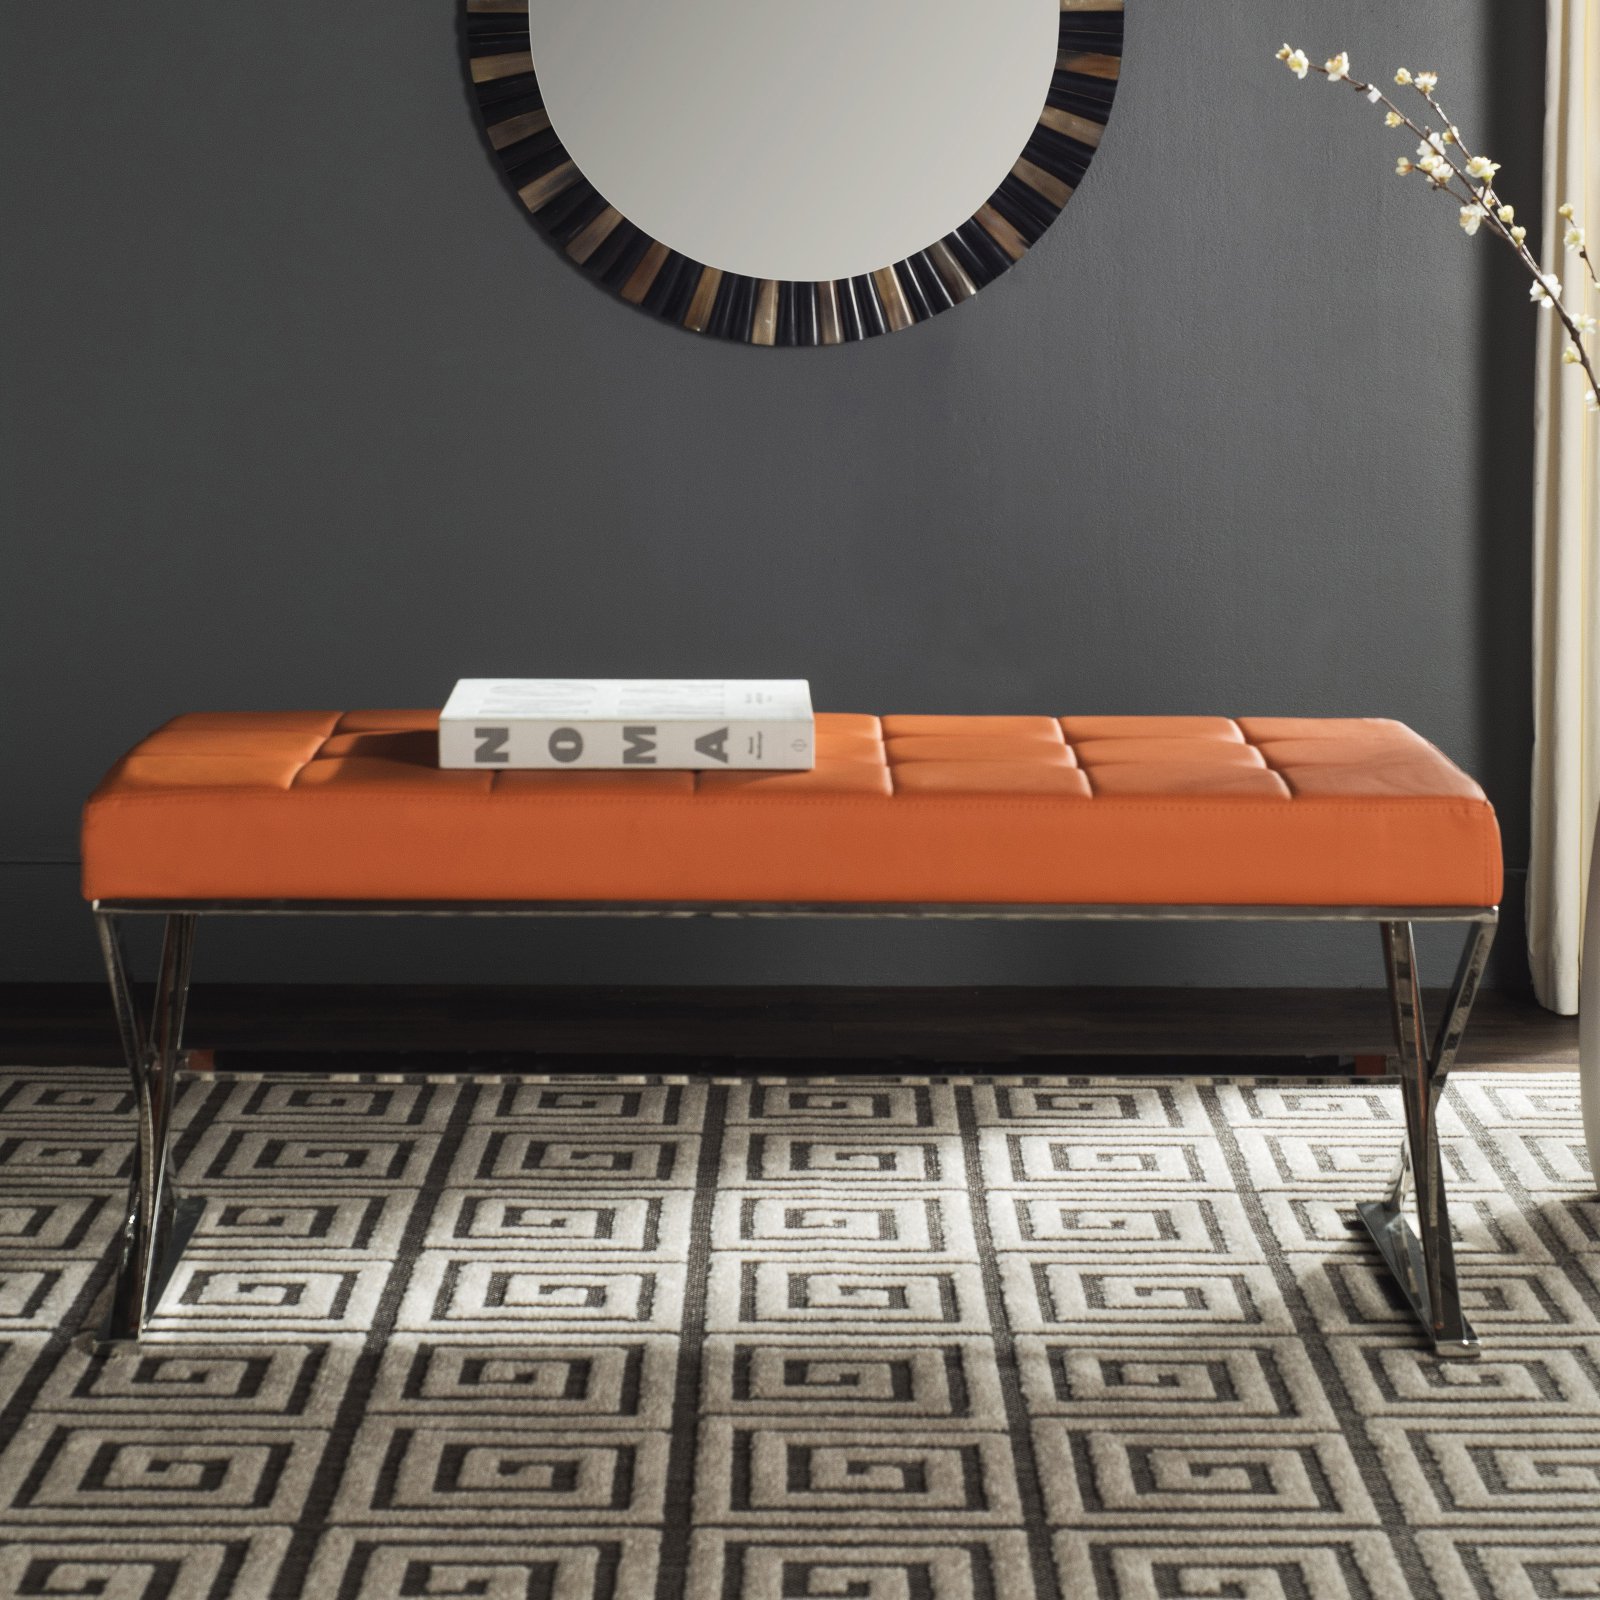 Safaiveh Micha Modern Glam X-Leg Upholstered Rectangular Bench, Orange/Chrome - image 1 of 2